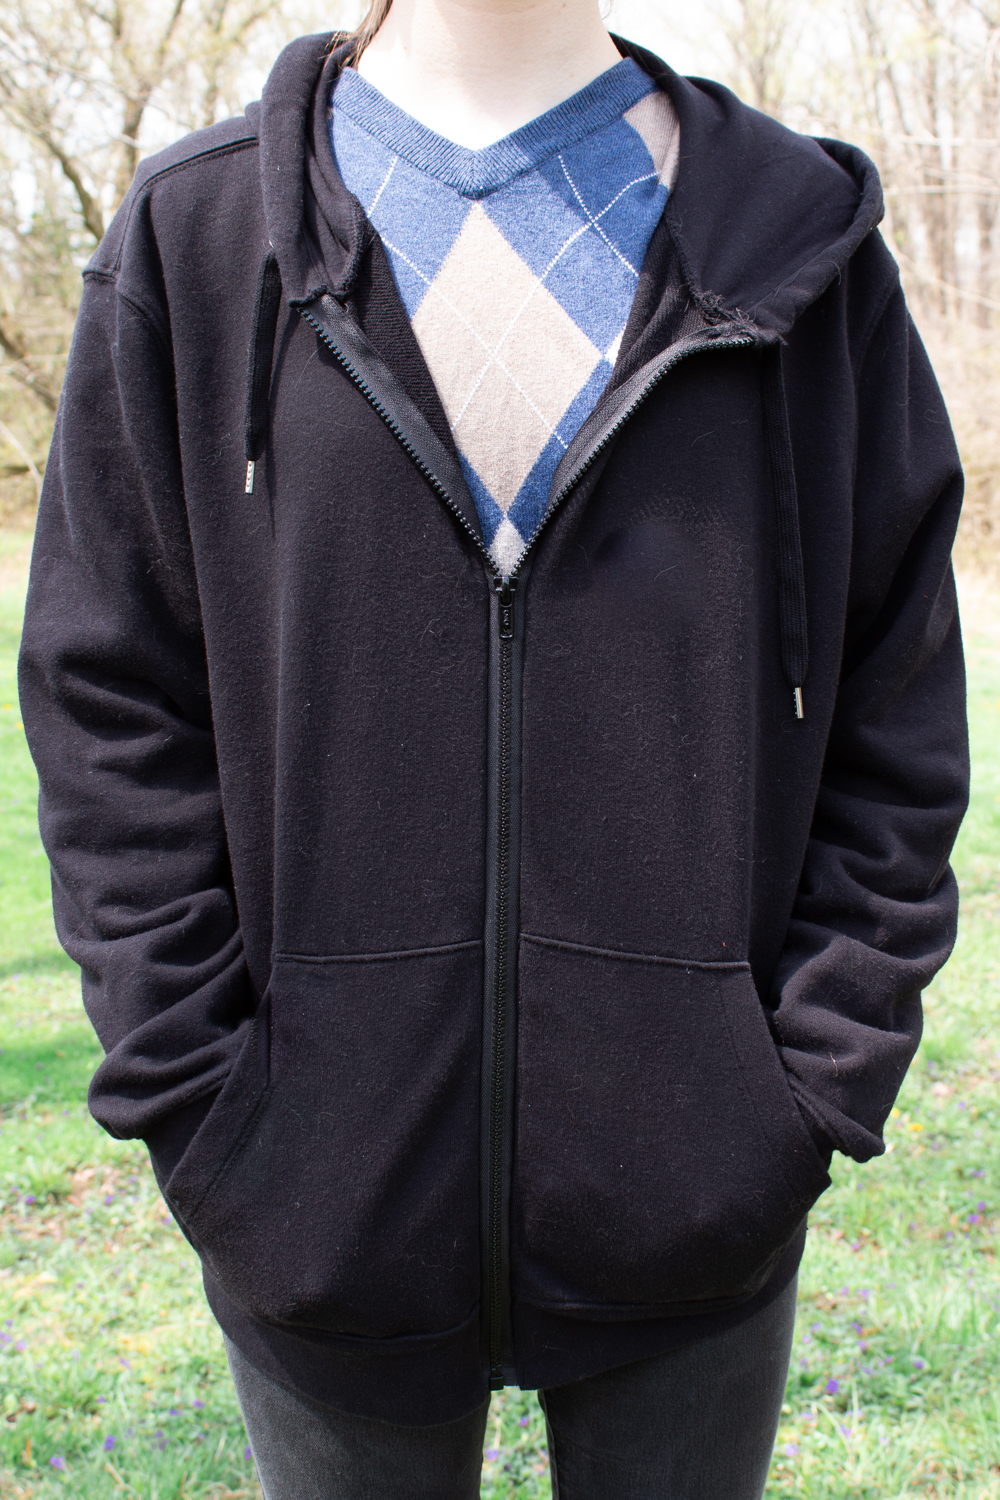 Buy Underhood of London Black Hoodie for Men - Large - Mens Zipper Zip Up  Sweatshirt - Cotton Jacket at Amazon.in